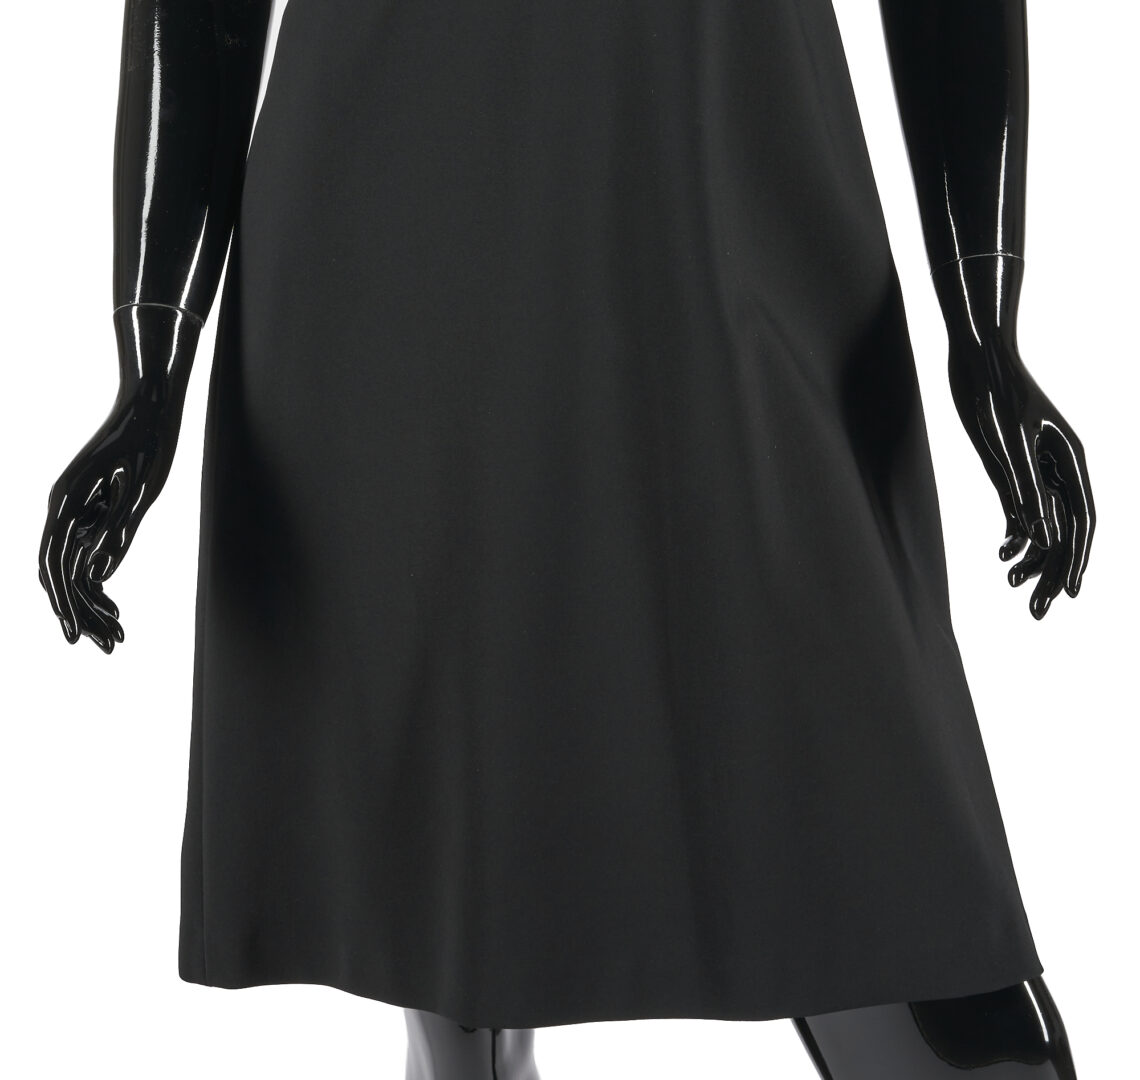 Lot 100: Gucci Black Jersey Dress